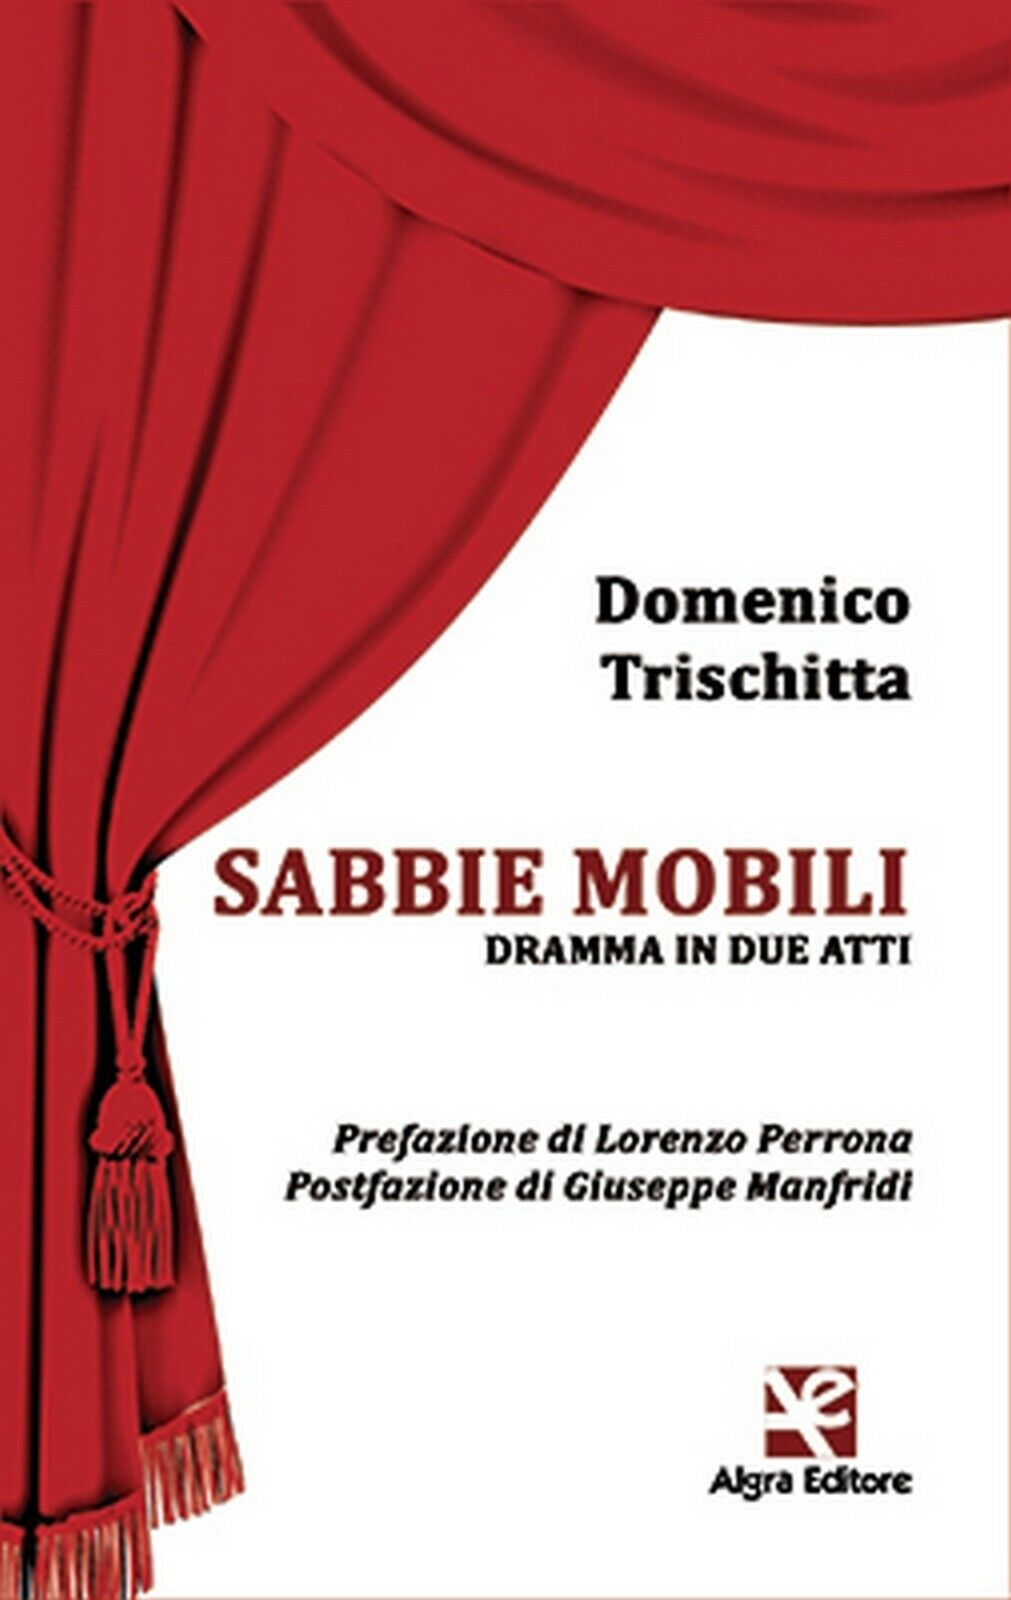 Sabbie mobili  di Domenico Trischitta,  Algra Editore